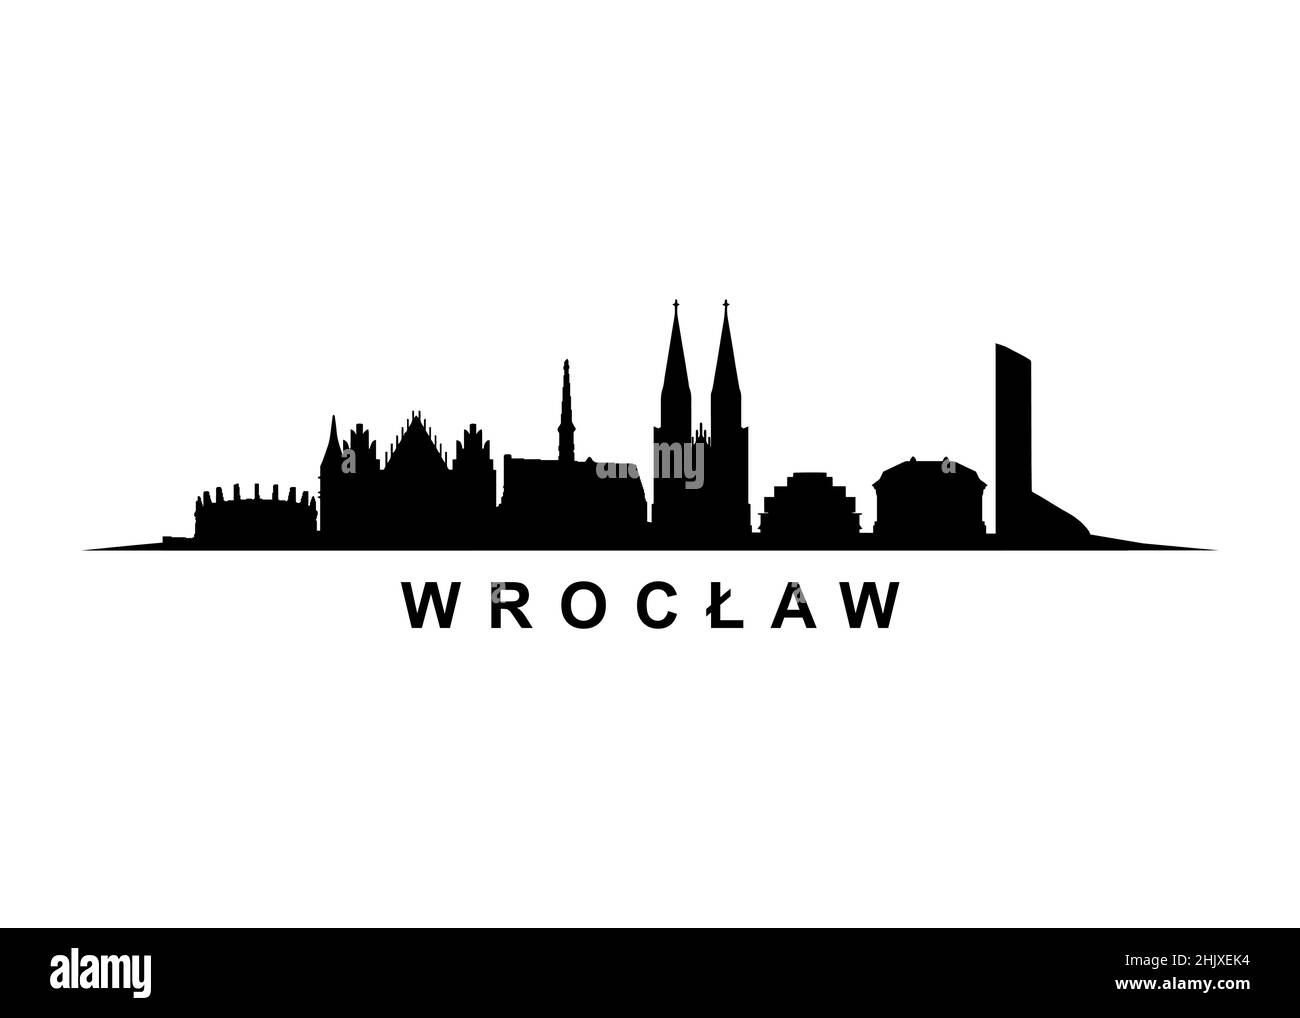 Wrocław Skyline Paysage ville Architecture Illustration de Vecteur